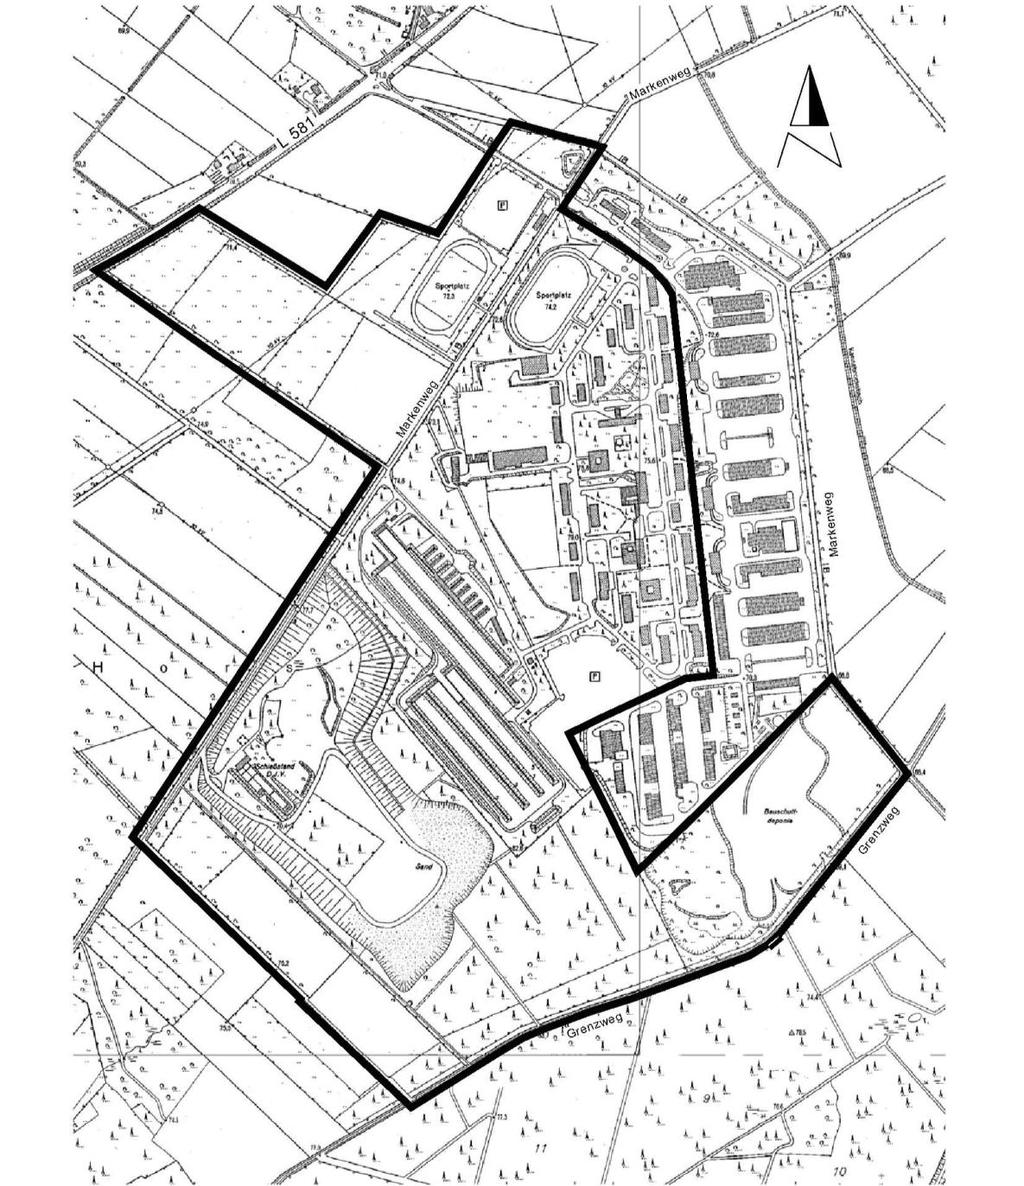 Nummer 11/2010 Amtsblatt der Stadt Coesfeld Seite 124 36/2010 65. Änderung des Flächennutzungsplanes der Stadt Coesfeld, Änderungsbeschluss und frühzeitige Öffentlichkeitsbeteiligung 65.